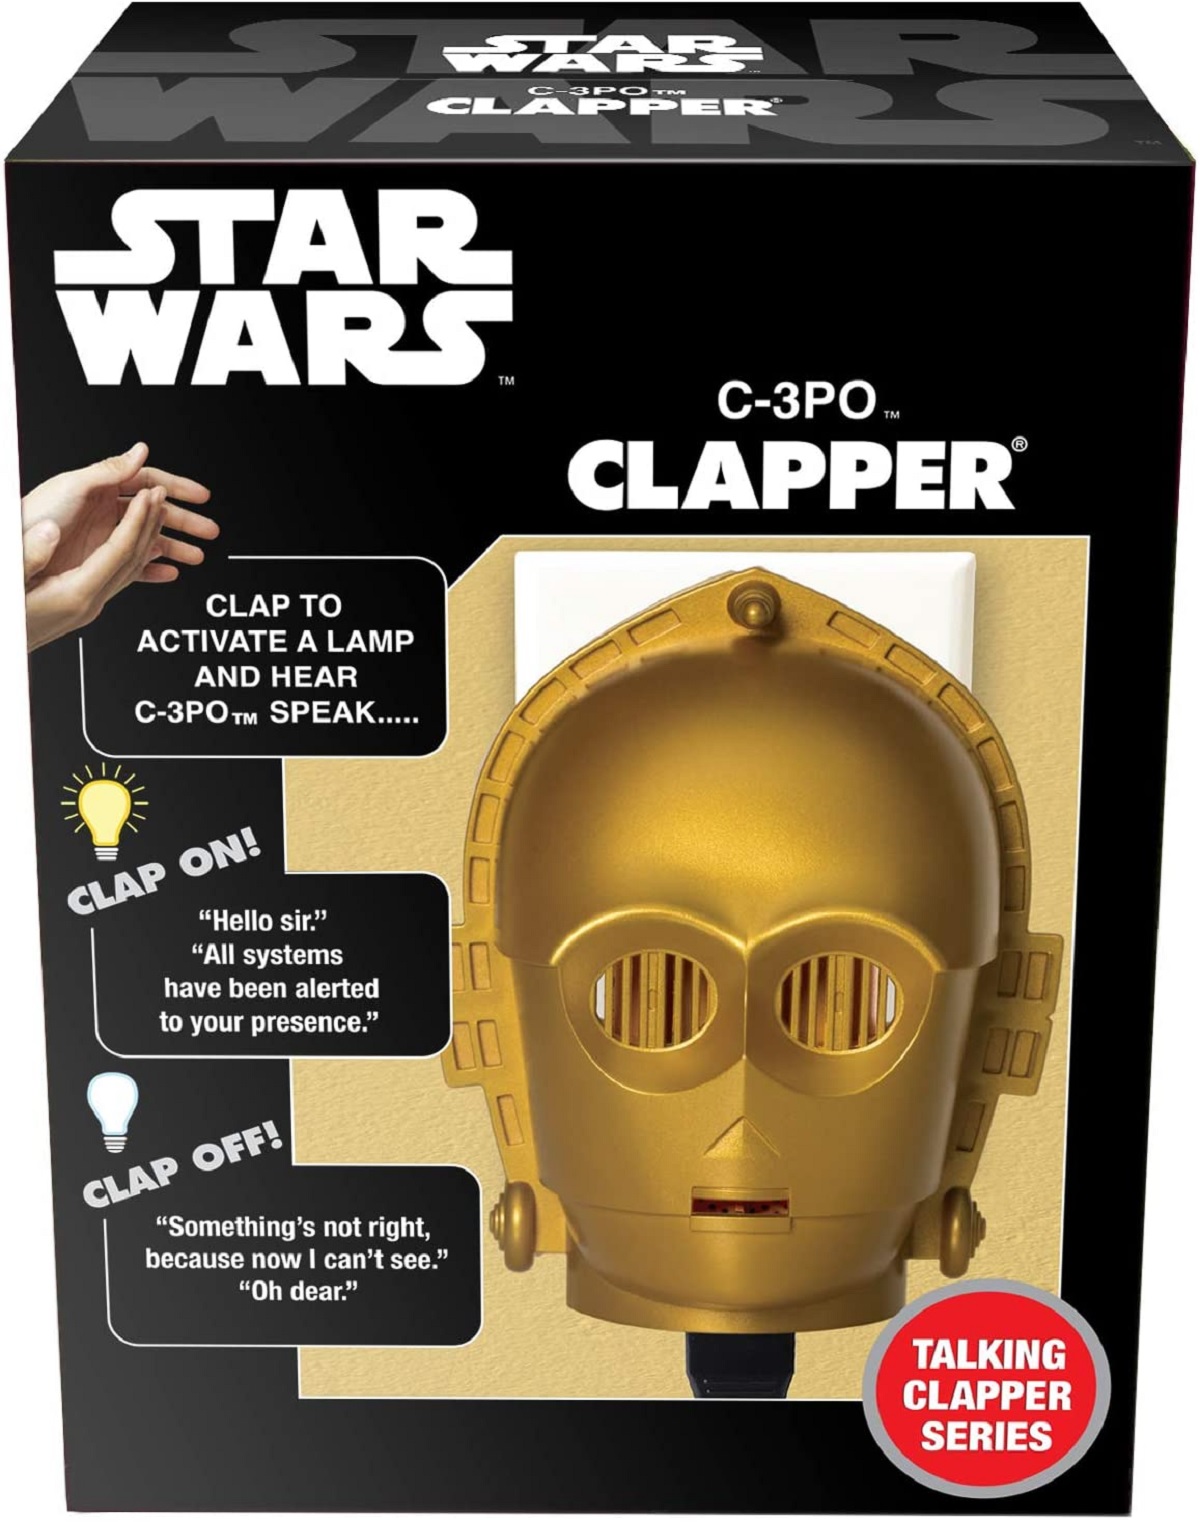 Star Wars Darth Vader Clapper - Wireless Sound Activated Clap